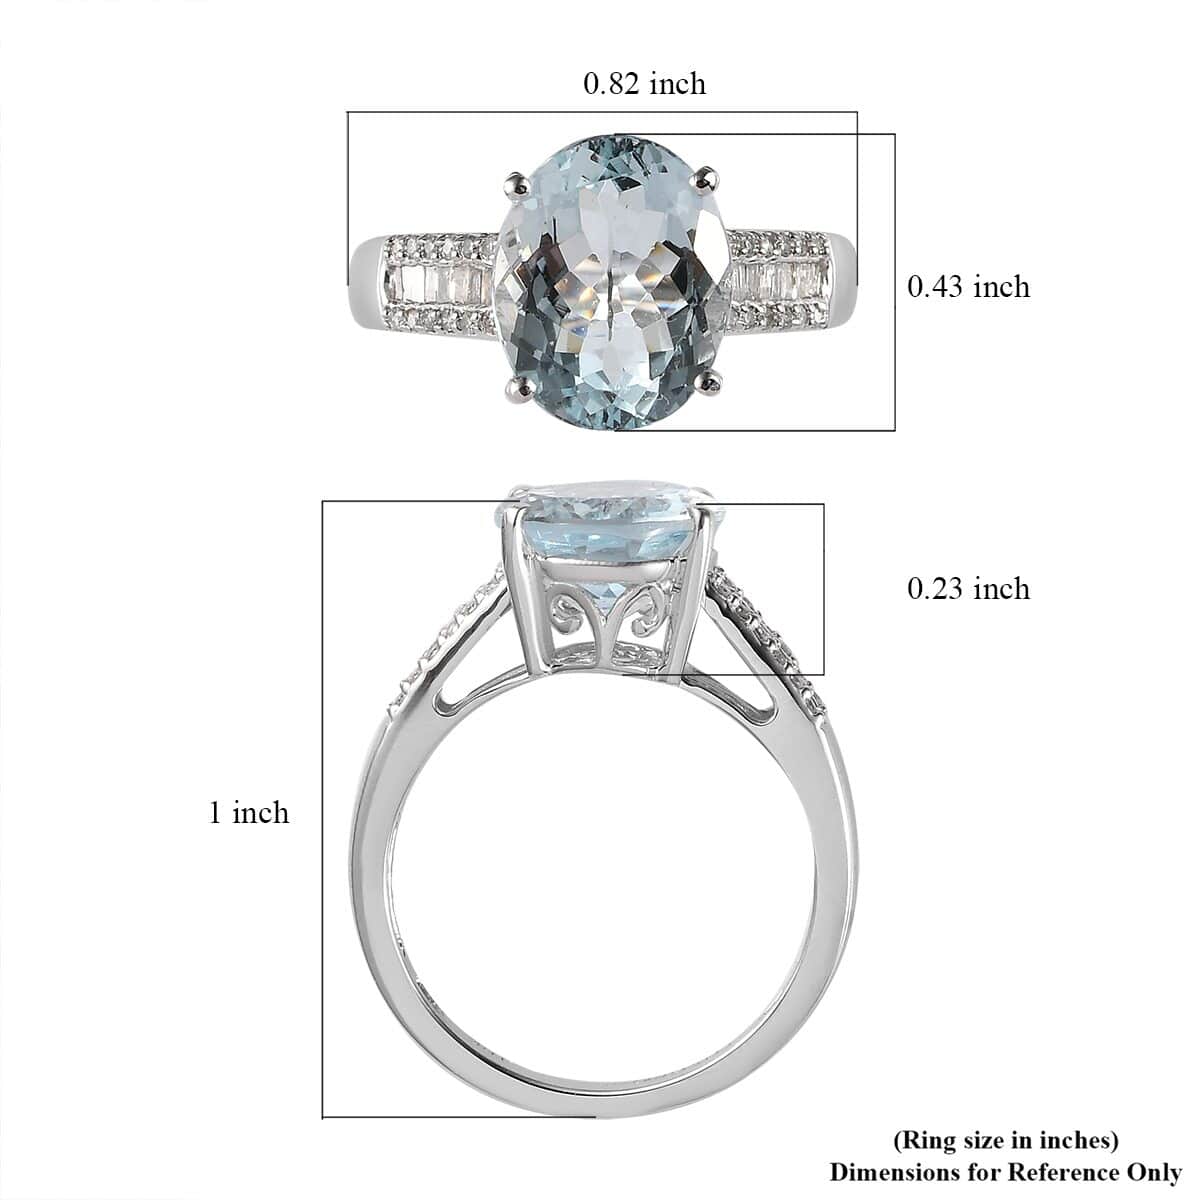 Luxoro 10K White Gold Premium Mangoro Aquamarine and Diamond Ring (Size 10.0) 3.40 ctw image number 5